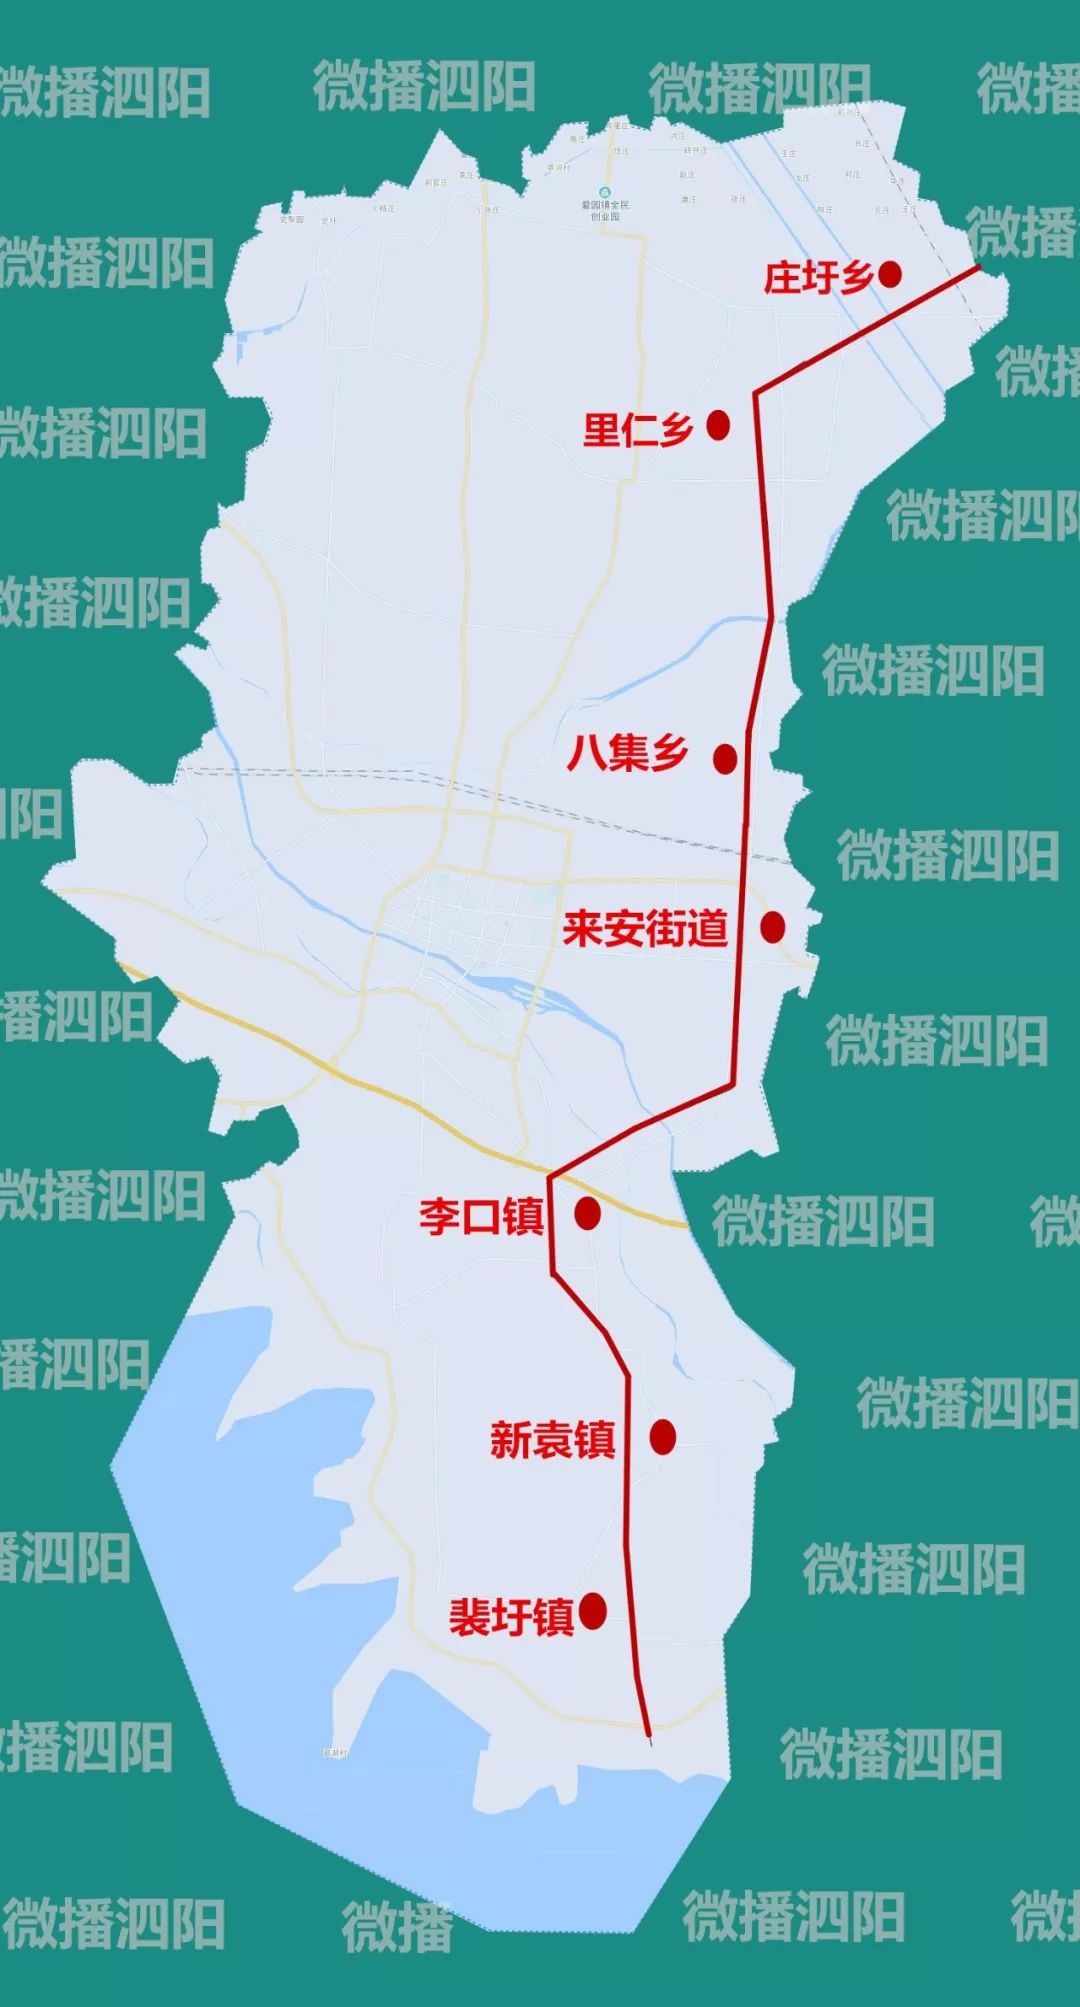 267省道高铁客运枢纽城西码头泗阳10个重大交通项目今年推进建设